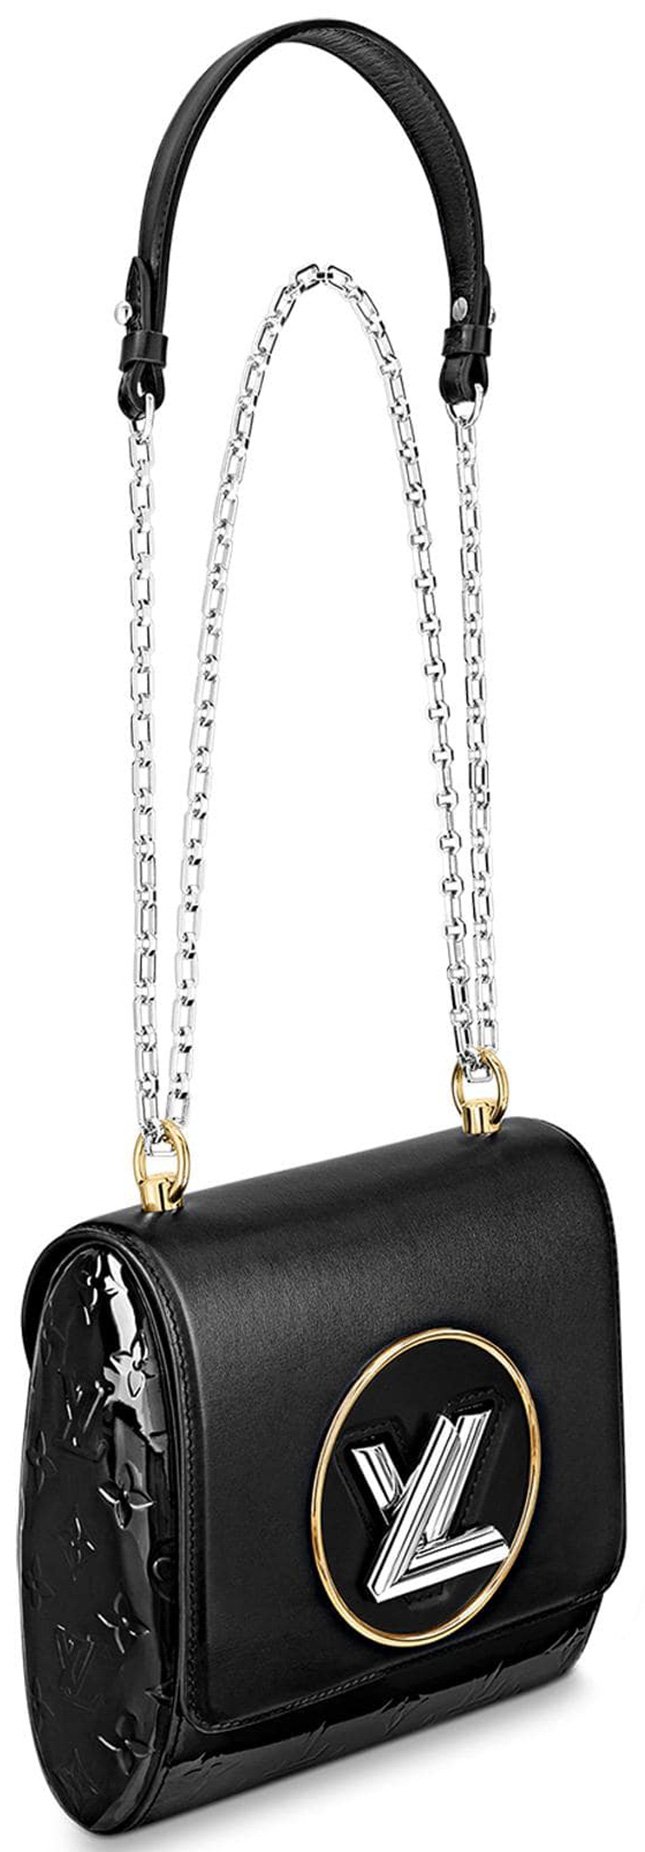 A Bag with a Twist - Louis Vuitton Pochette Trapeze - Happyface313